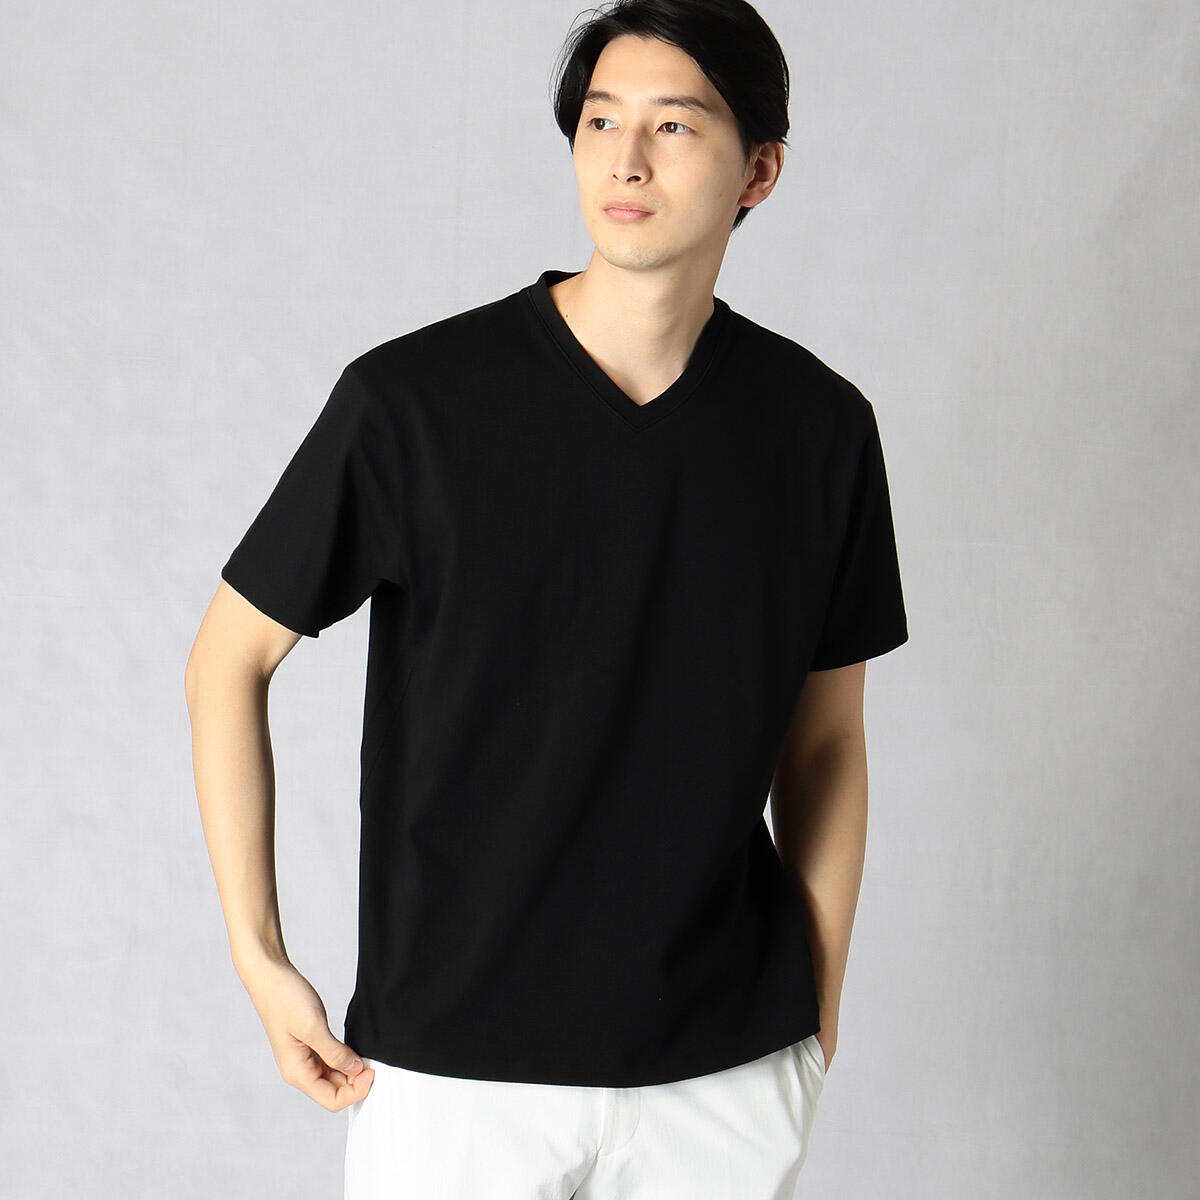 VネックTシャツ「Triporous FIBER」 | コムサ・メン(COMME CA MEN) | 07-42TT04-201 | ファッション通販  マルイウェブチャネル